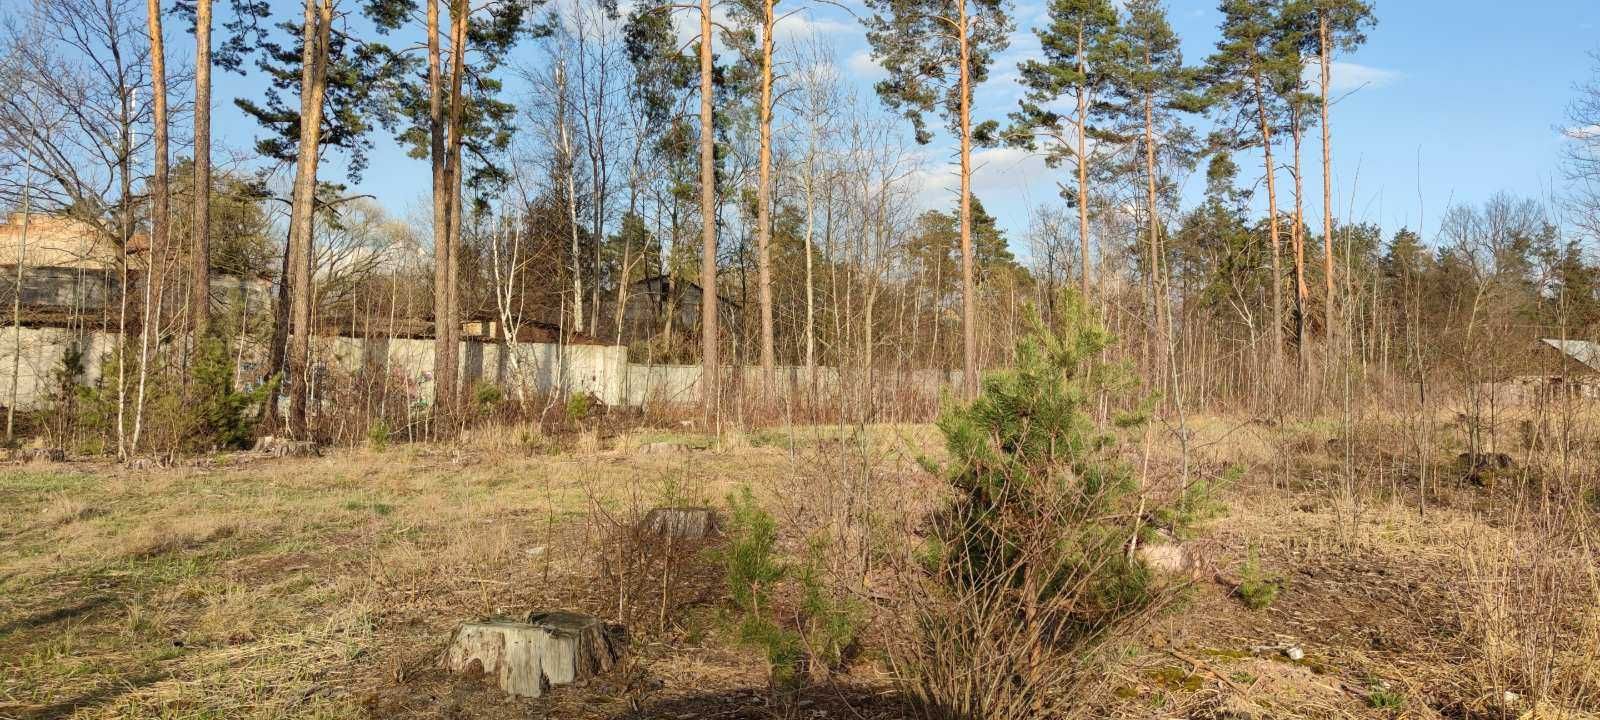 Продаж земельної ділянки 15 соток в селищі Клавдієво-Тарасове.